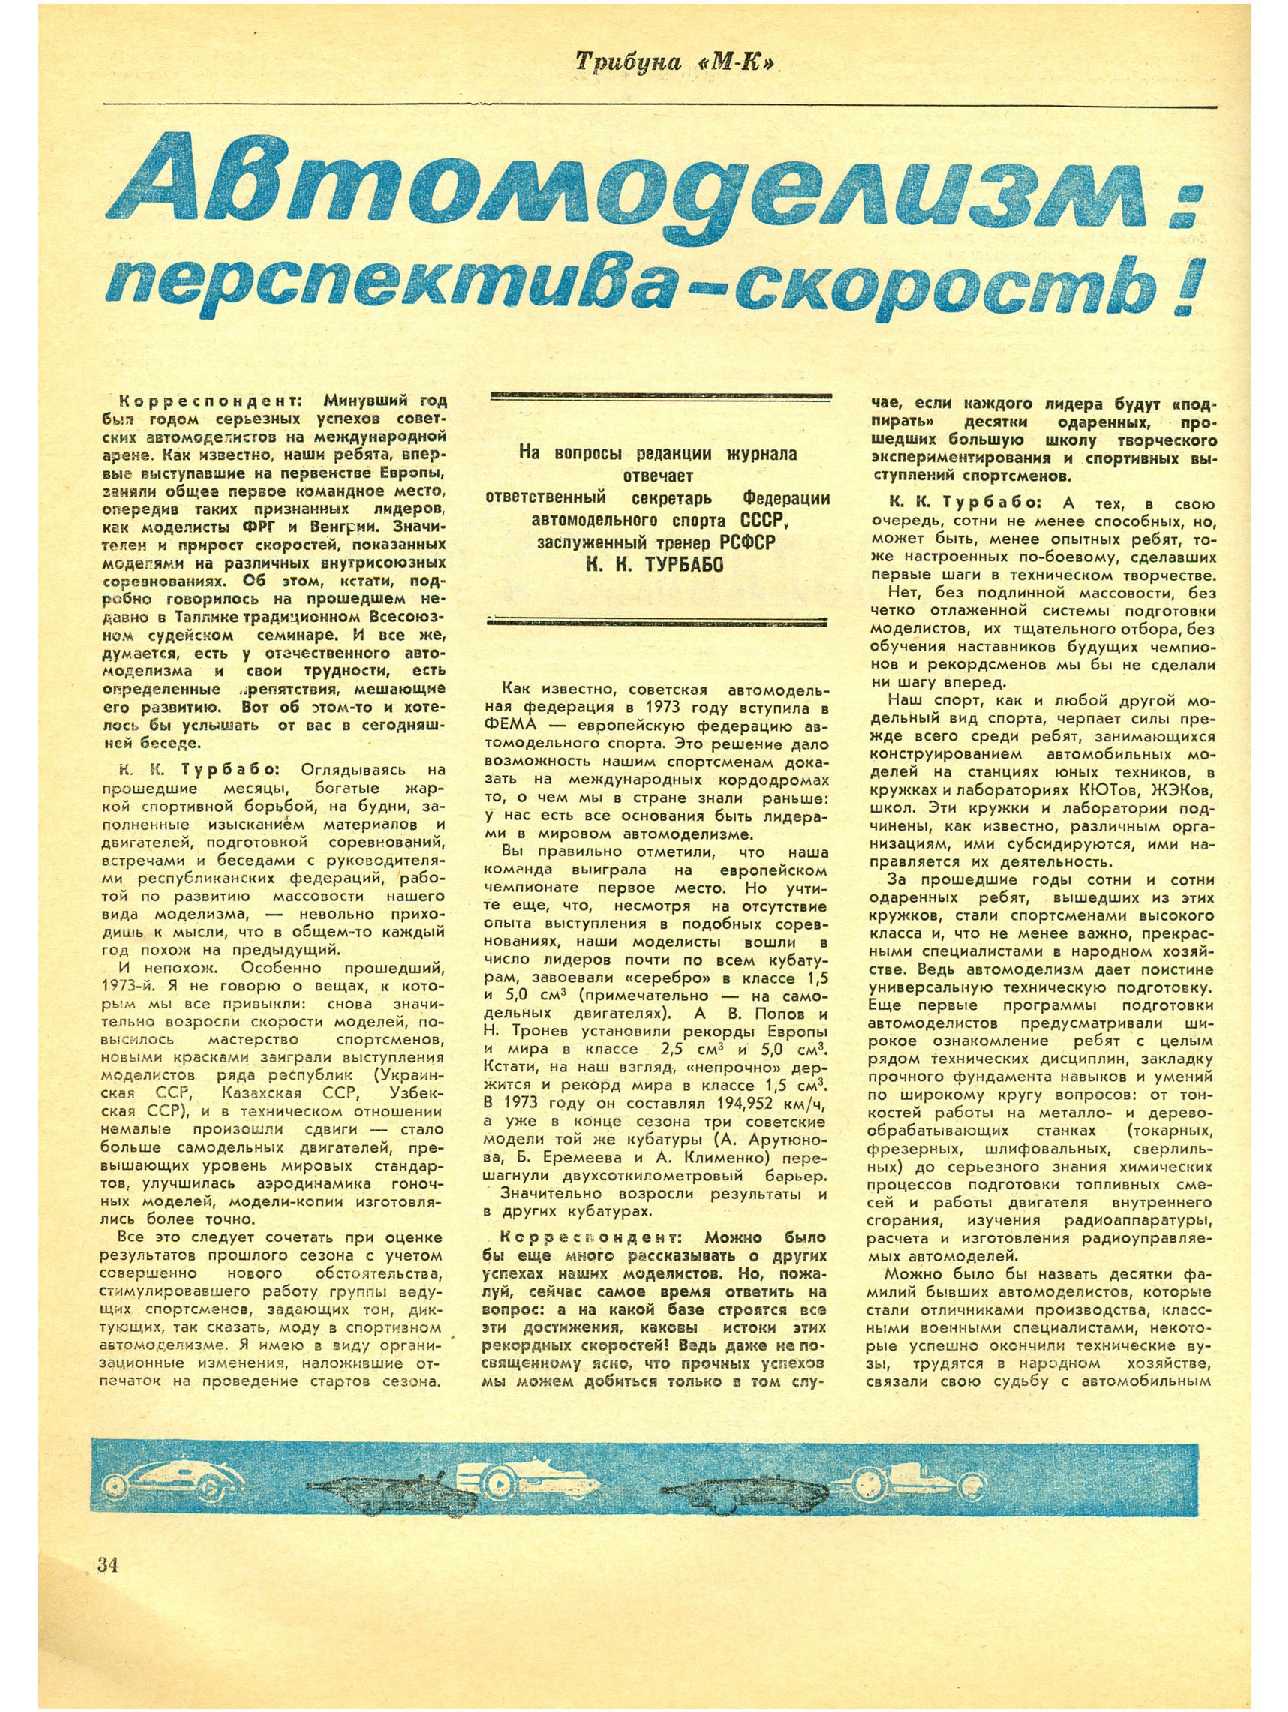 МК 4, 1974, 34 c.